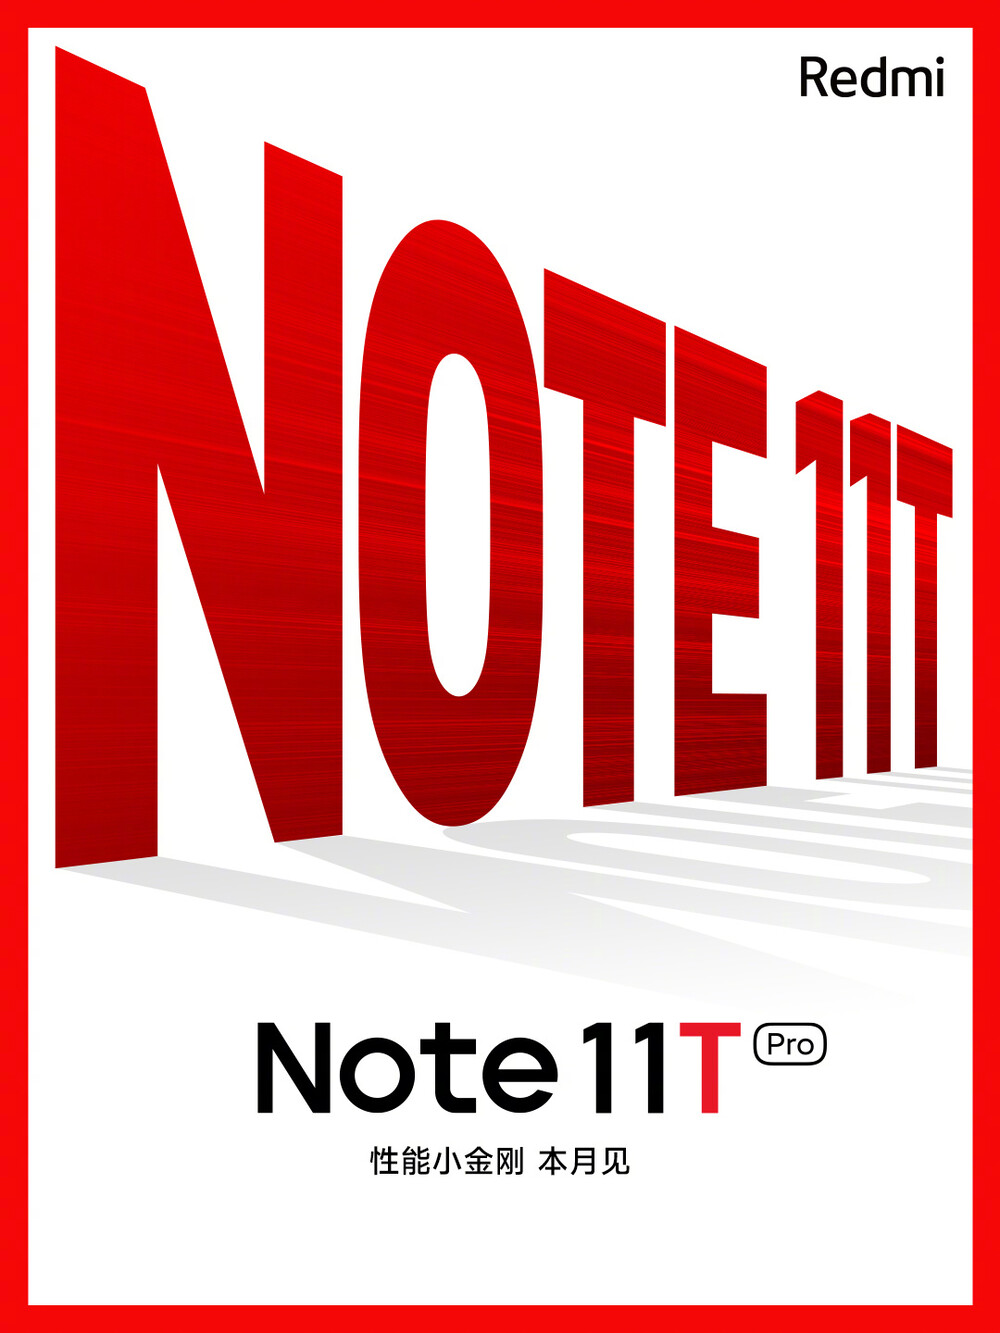 A Redmi Note 11T Pro hivatalos kedvcsinálój